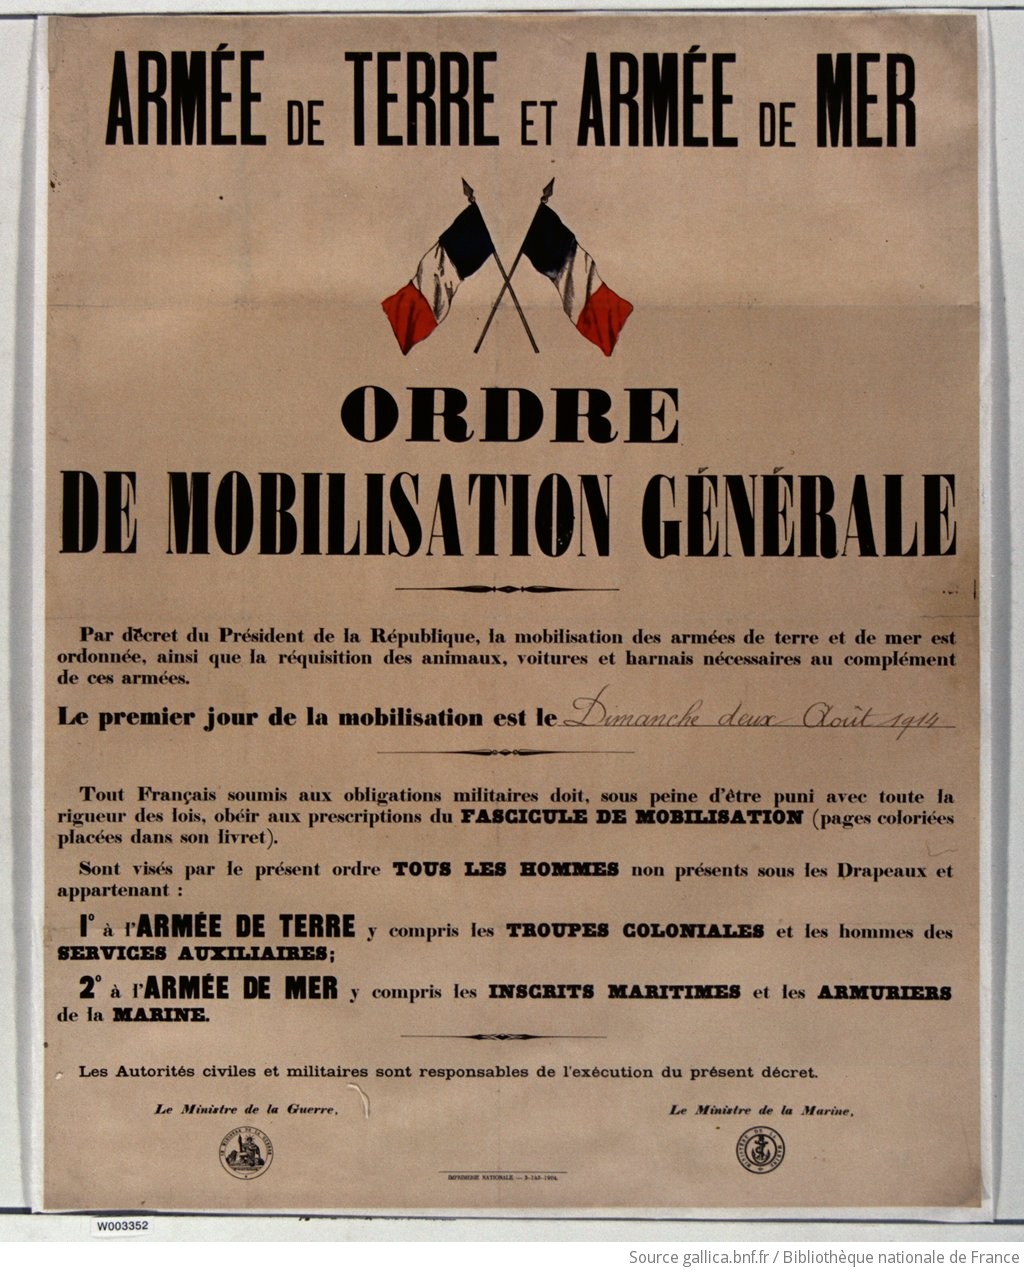 Armée de Terre et Armée de Mer. Ordre de mobilisation générale... Dimanche 2 août 1914... : [affiche] / [non identifié] - 1